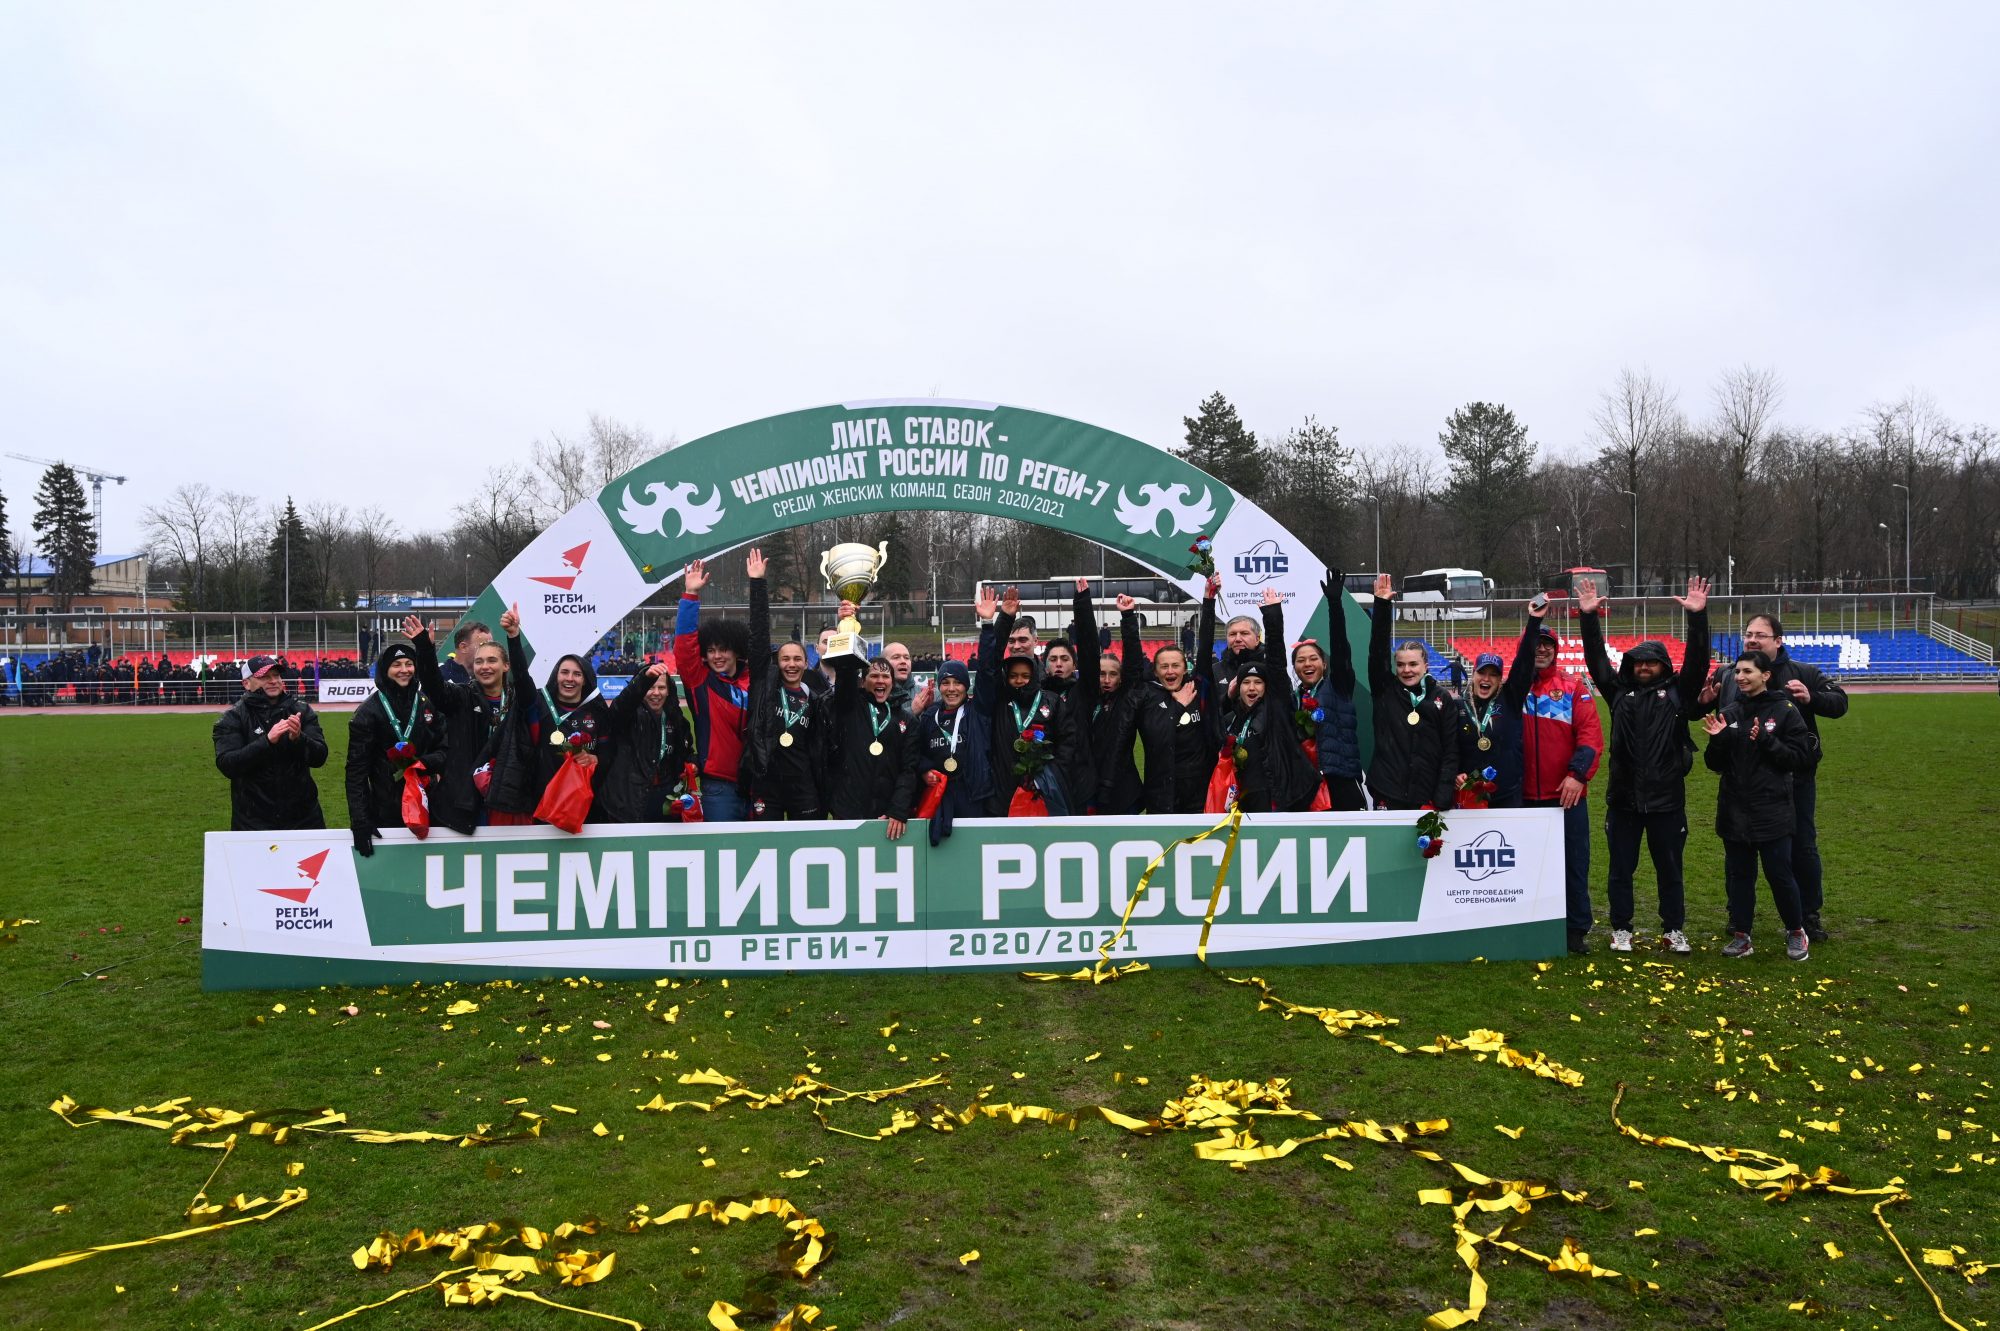 Московская женская команда регби-7 стала чемпионом России